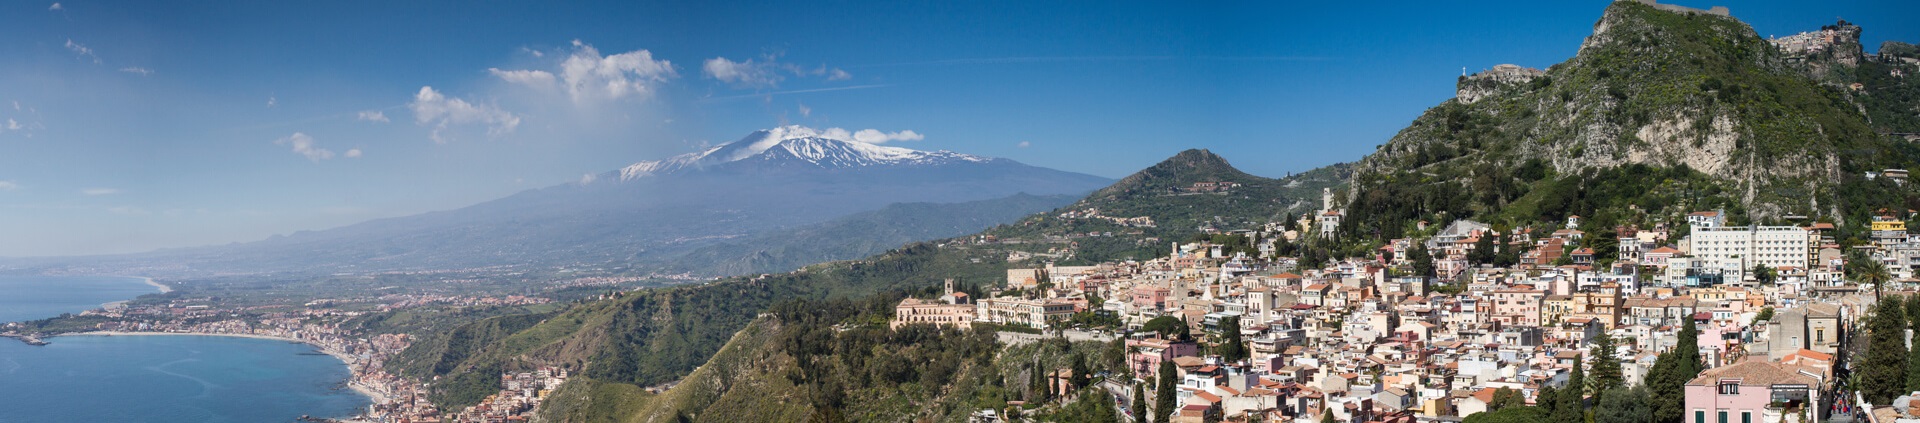 Taormina - fascynujące miasto do poznawania języka włoskiego